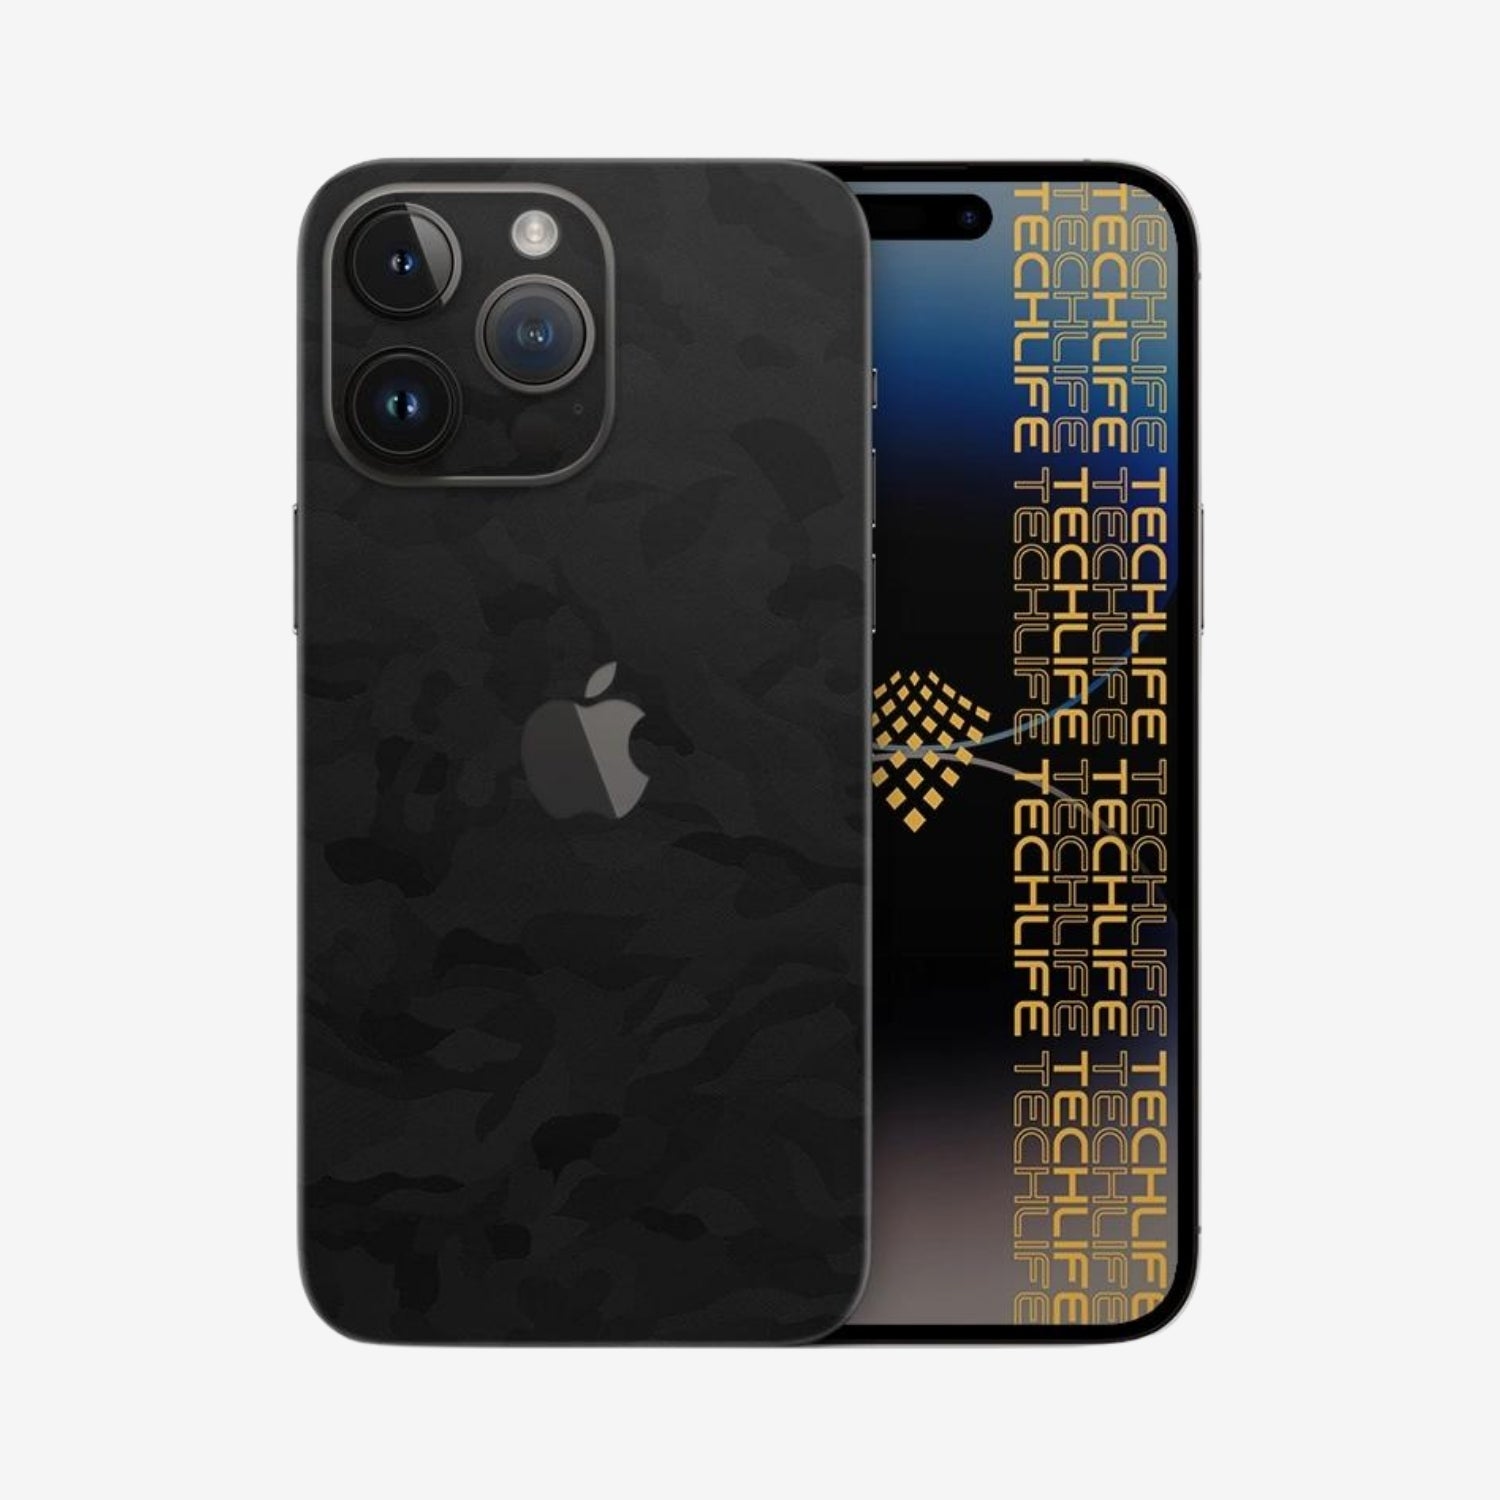 Skin Premium Camuflaje Espectro Negro iPhone 12 Pro Max